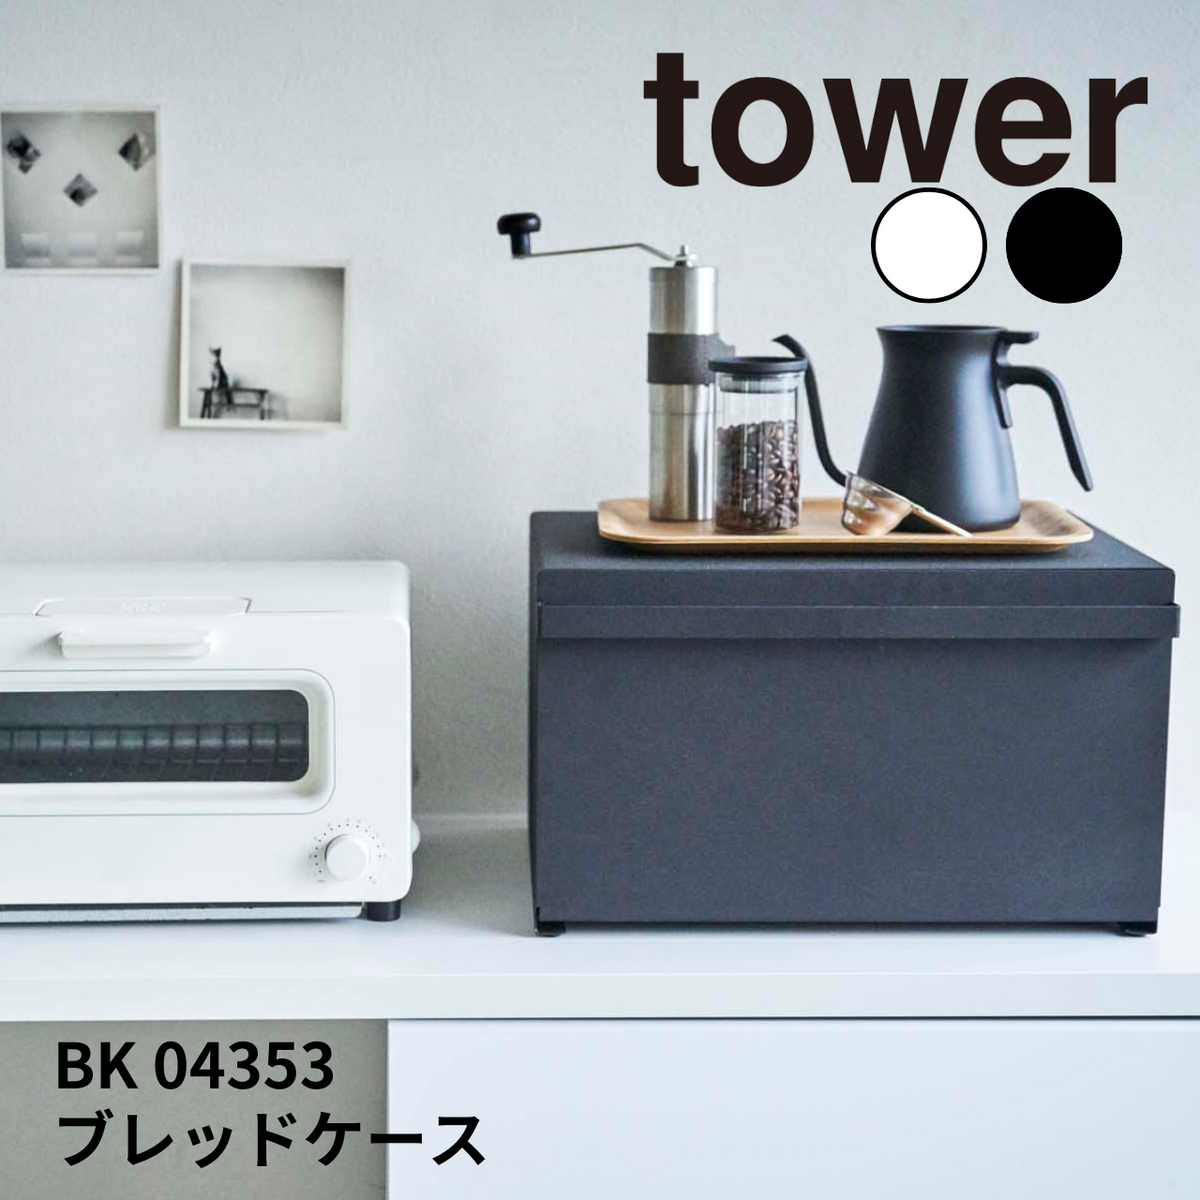 tower / タワー ブレッドケース 山崎実業 / yamazaki BK 04353 – 鍋 